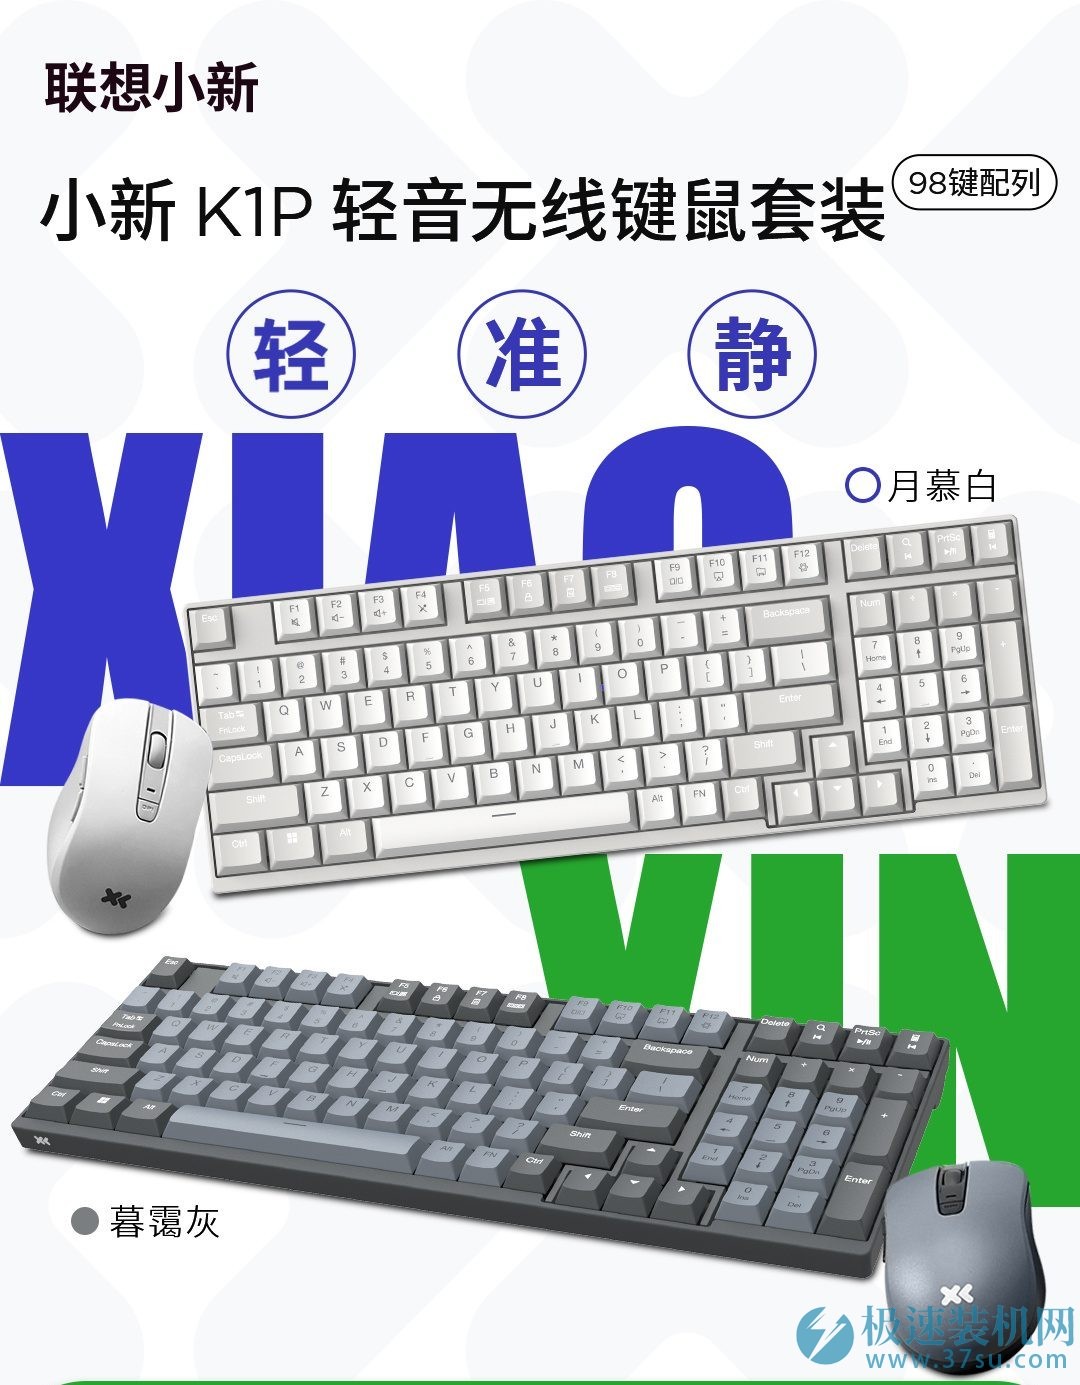 联想小新 K1P 轻音无线键鼠套装开启预约：键盘 98 键 / 鼠标 3 档 DPI，169 元